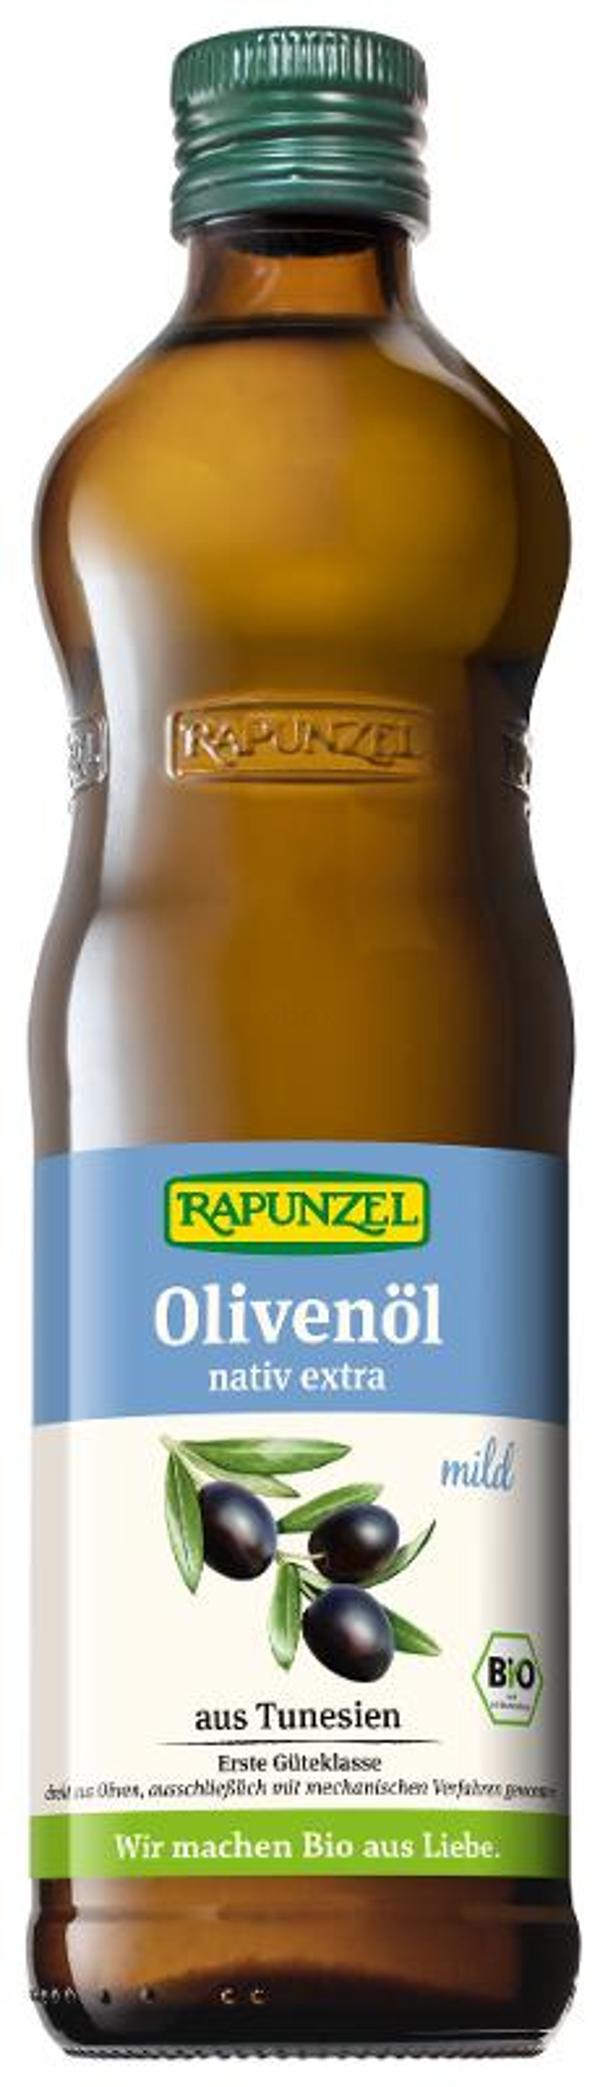 Produktfoto zu Olivenöl Mild nativ Extra 0,5l, Rapunzel